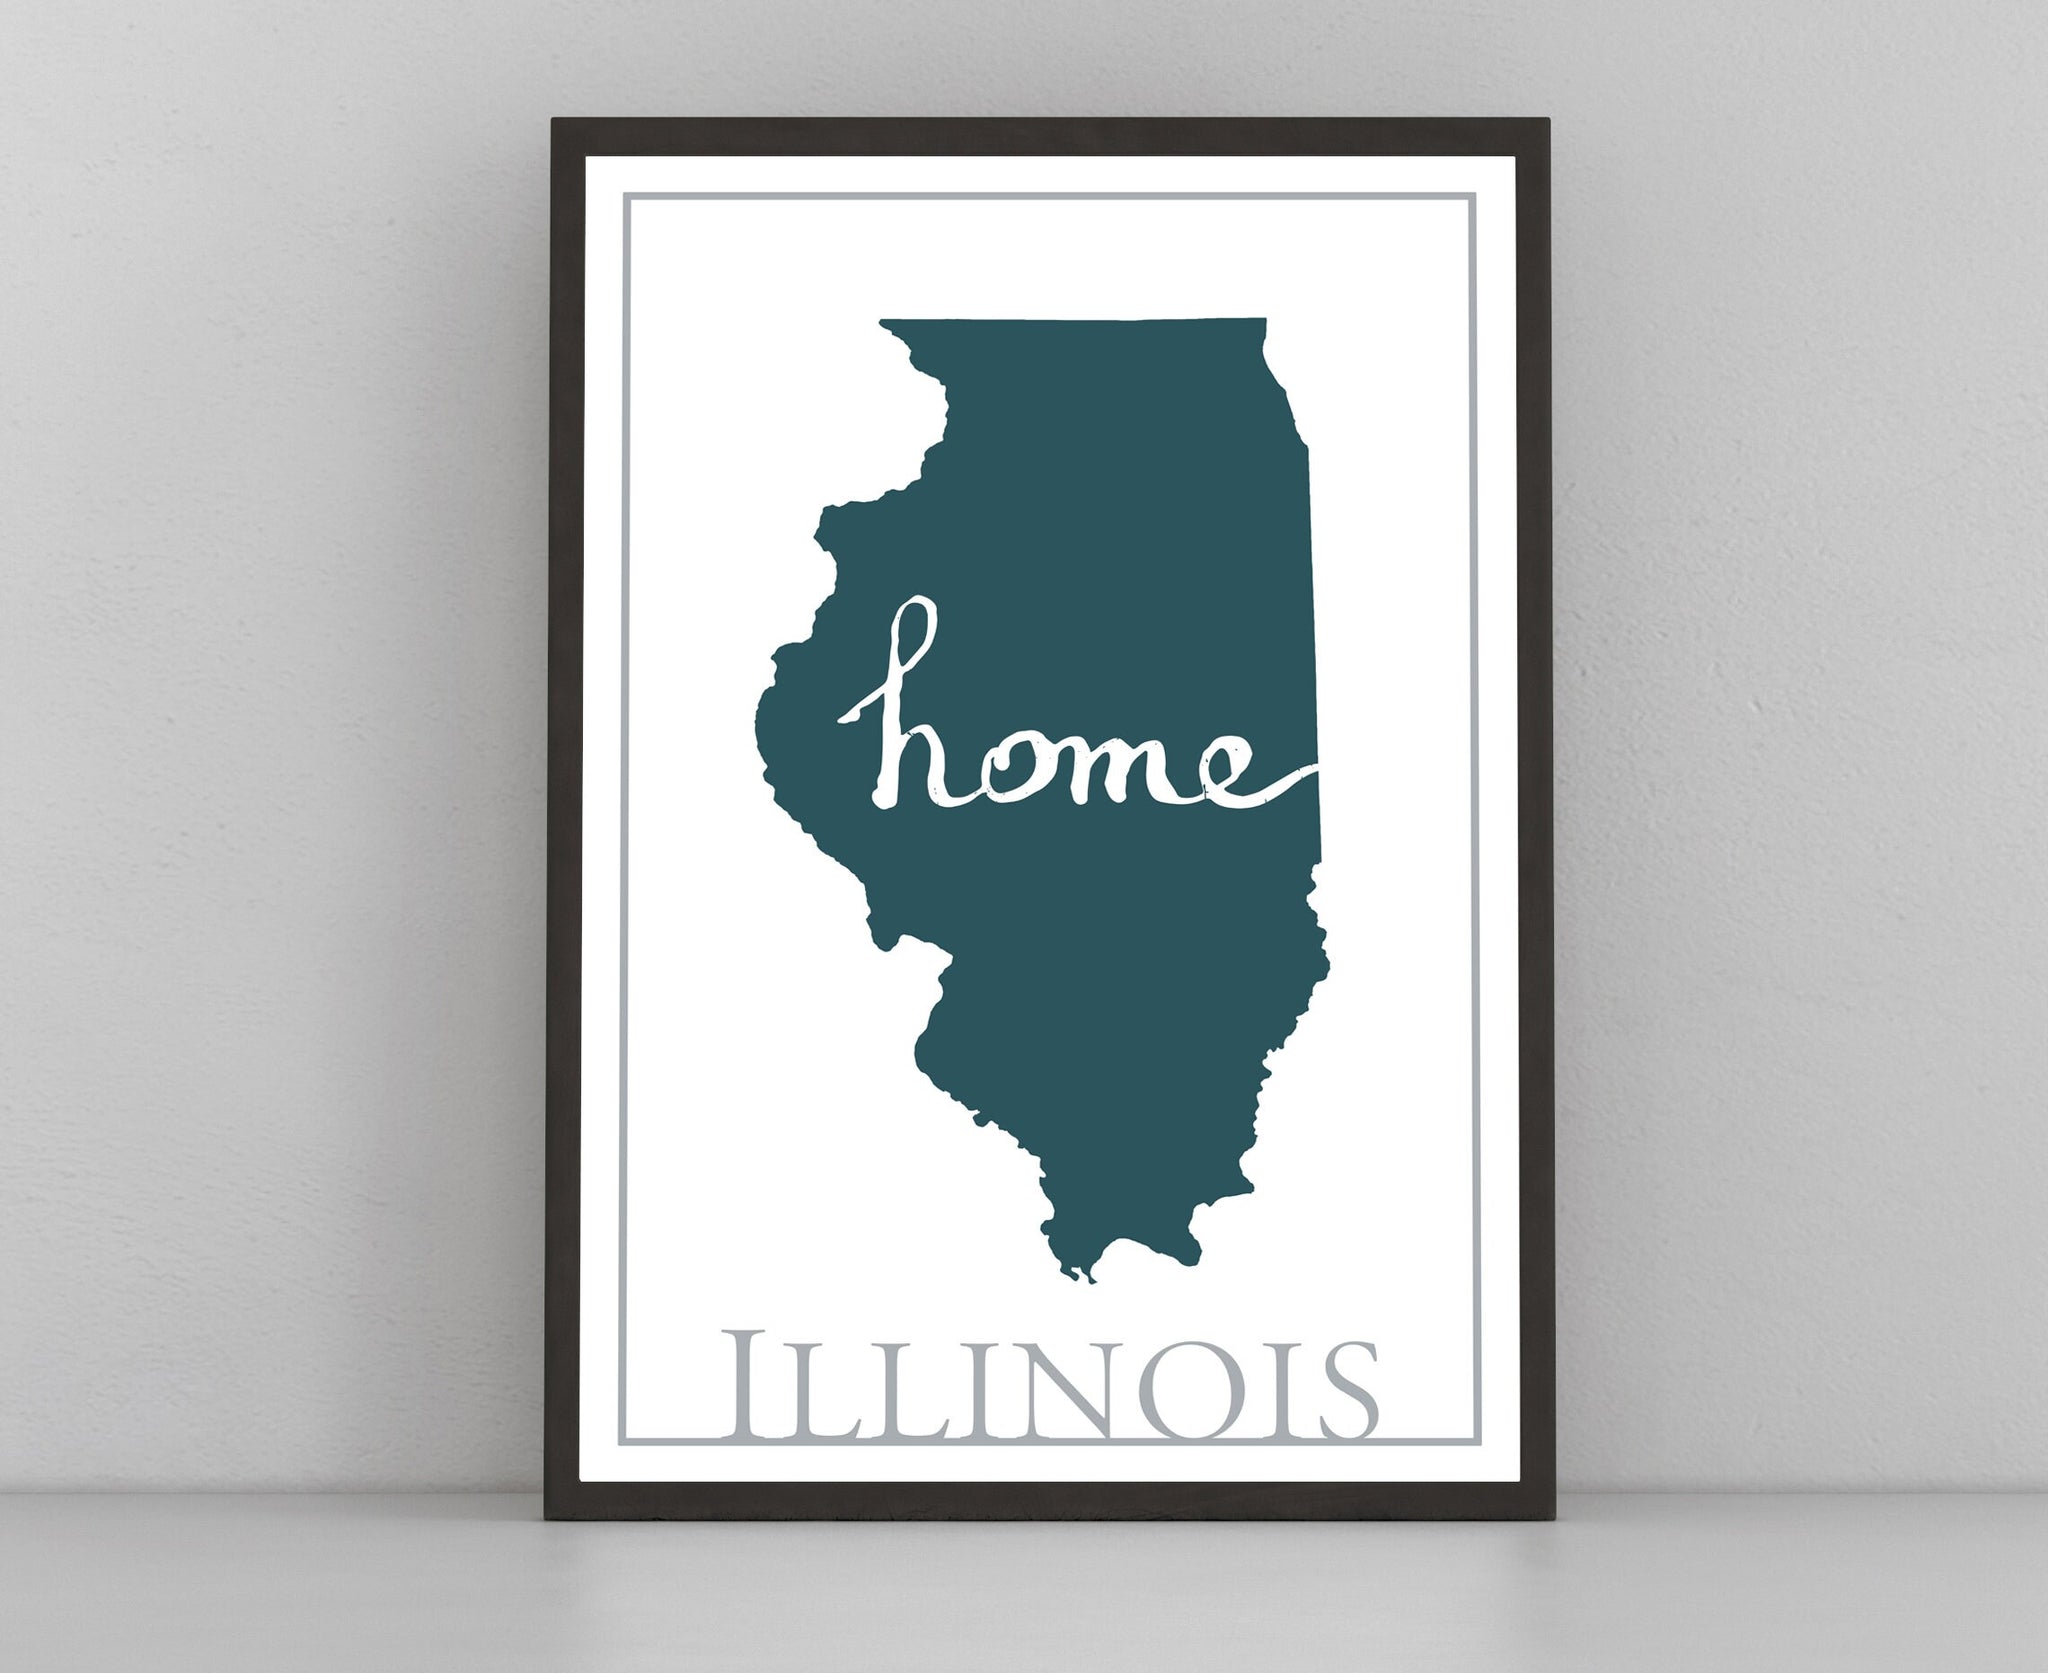 Illinois Map Wall Art, Illinois Modern Map Poster Print, Wall  Decor, City Map, Illinois City Poster Print,State Poster,Home Office wall art